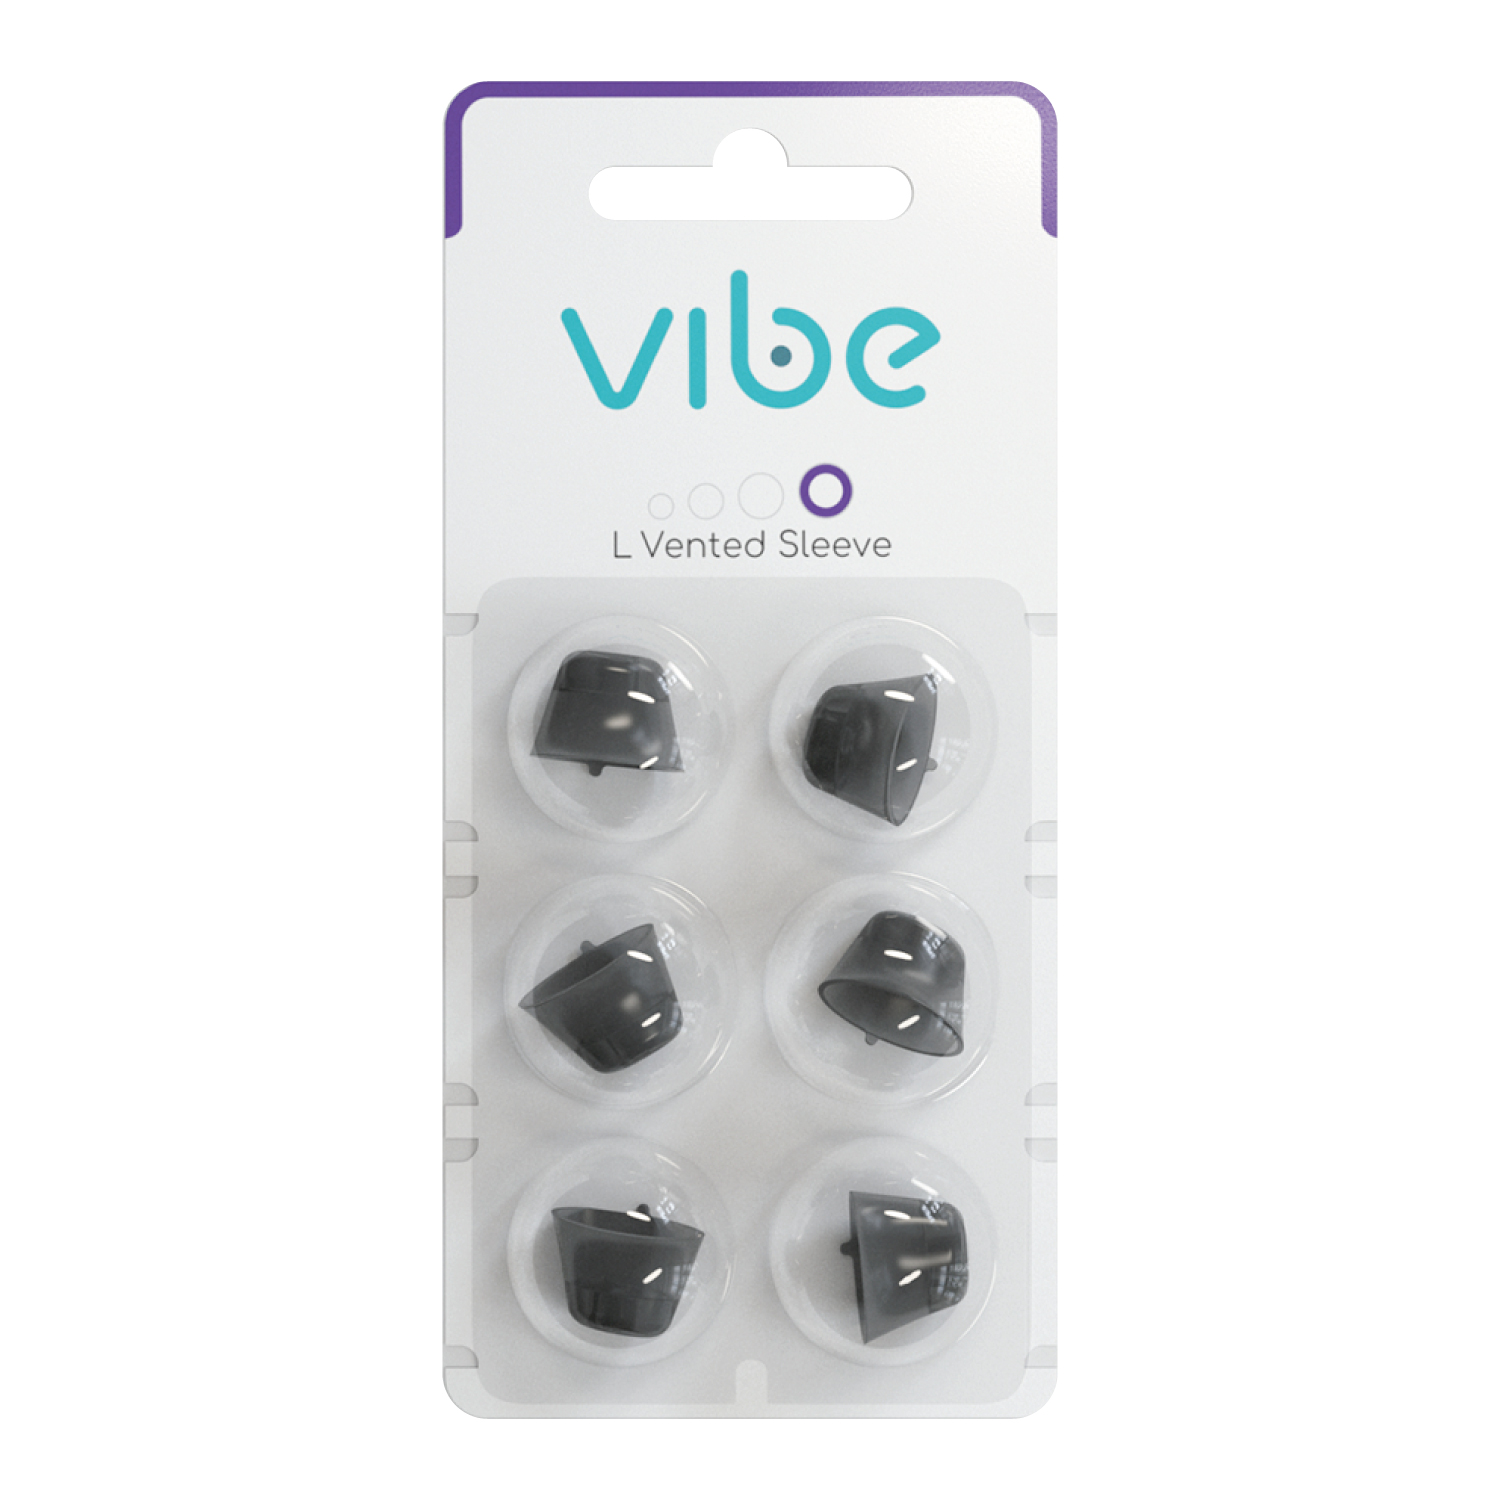 【あすつく】 Vibe Nano8 Mini8 補聴器の交換用スリーブ 用 交換用 スリーブ 耳せん Sサイズ 穴なし 6個入 交換時期 3ヶ月 Signia Sivantos 取り換え 汚れ 新品 耳穴 耳あな 補聴器 ヴィーブ 2.0 wmsamuelbradford.com